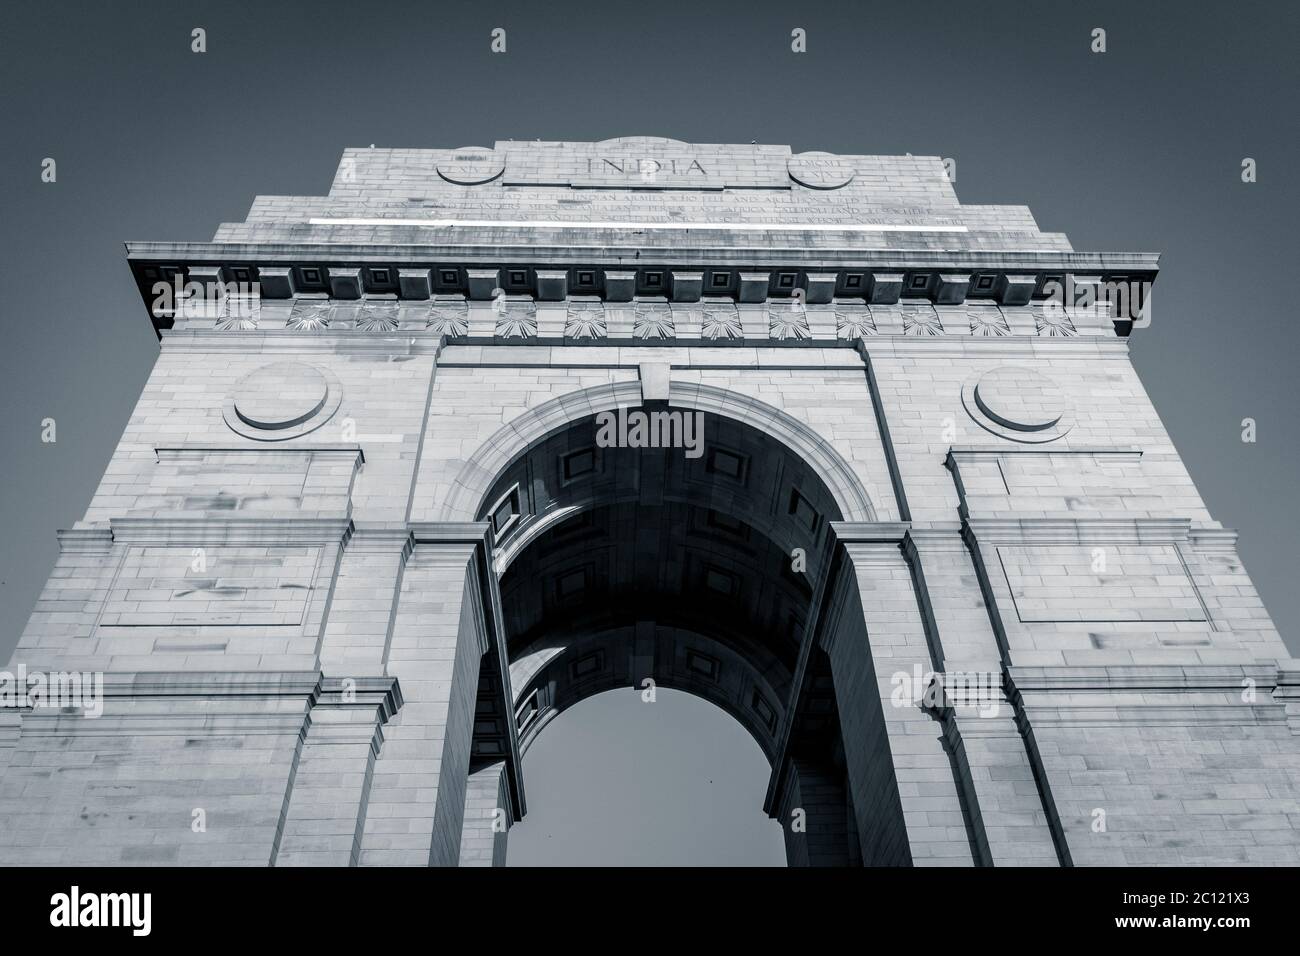 India Gate War Memorial situato a Nuova Delhi, India. India Gate è l'attrazione turistica più popolare da visitare a Nuova Delhi. Nuova Delhi è la capitale. Foto Stock